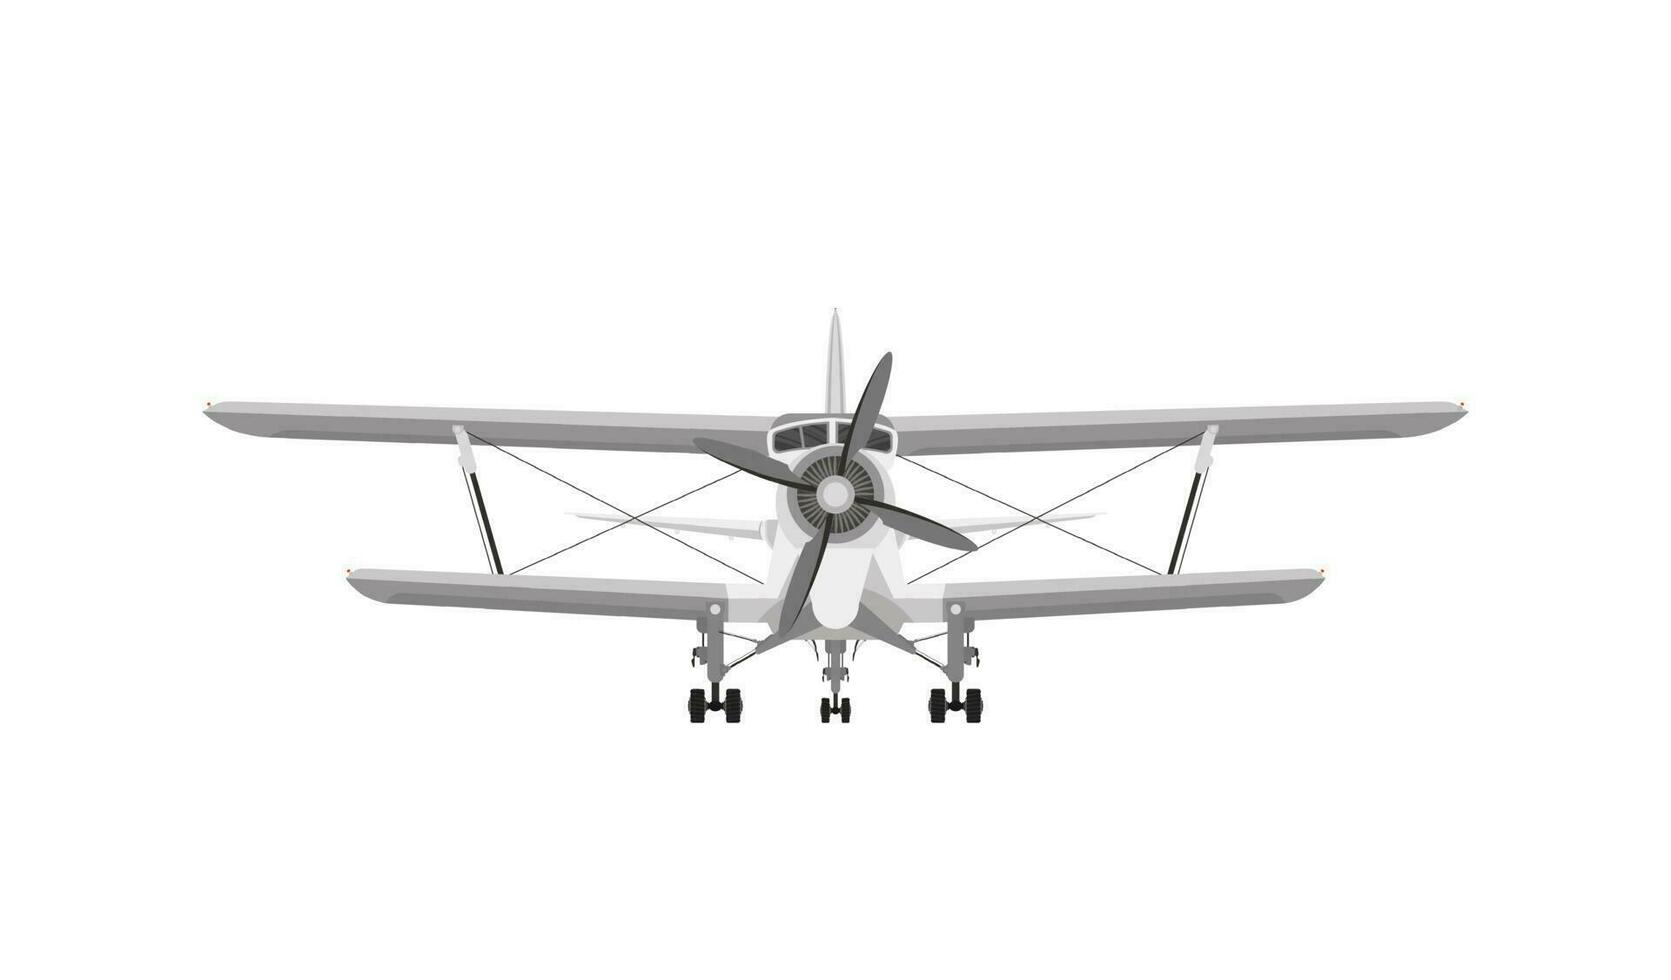 Vorderseite Aussicht von Weiß Flugzeug Doppeldecker mit Kolben Motor und Propeller. isoliert auf ein Weiß Hintergrund vektor